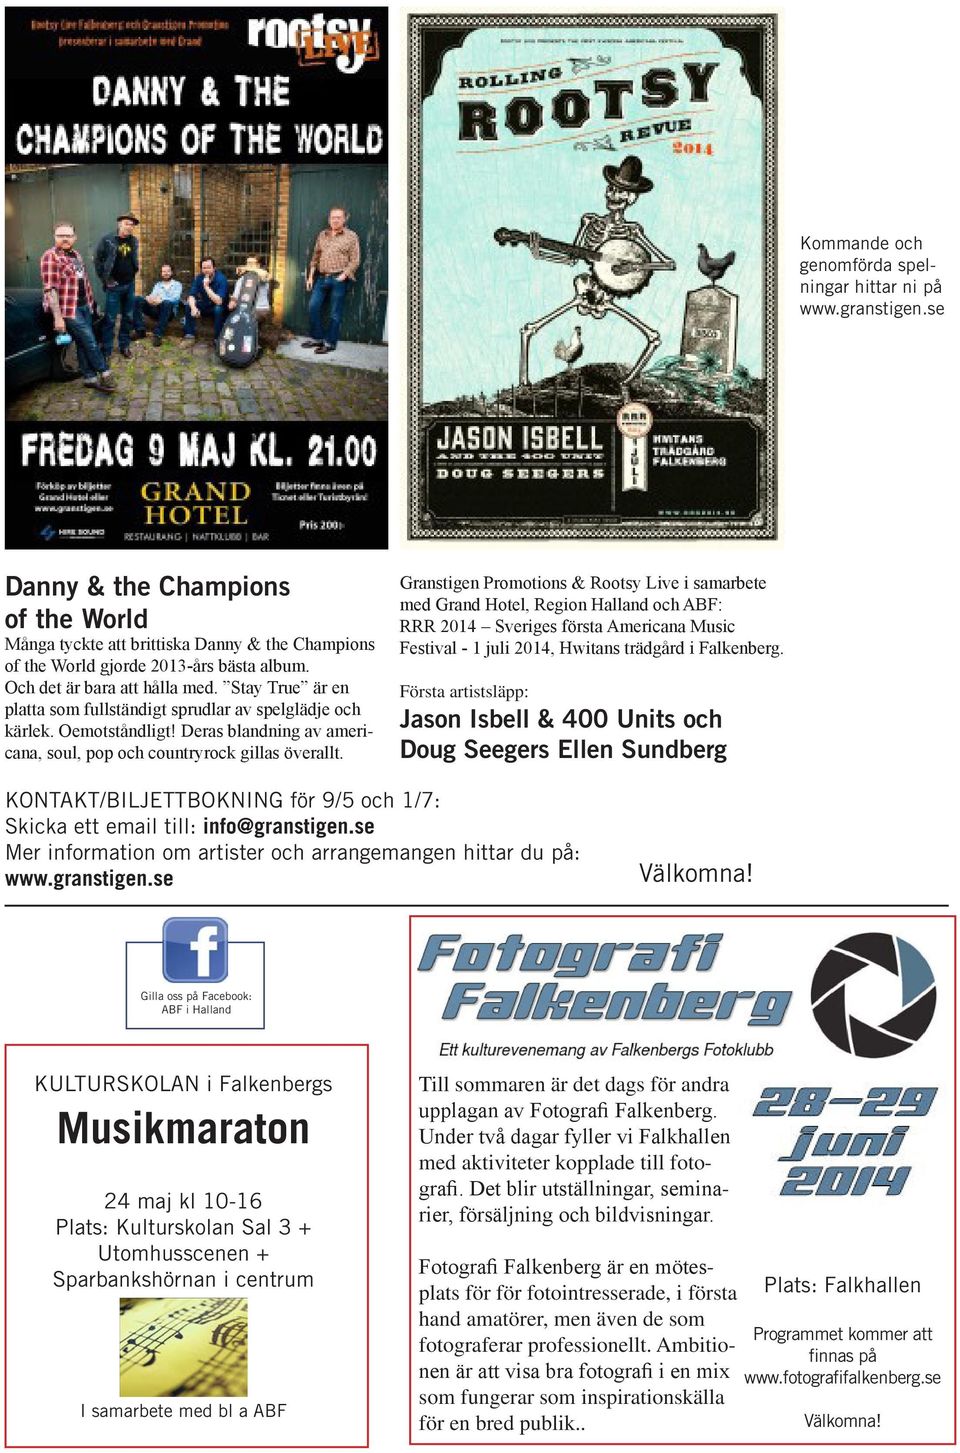 Granstigen Promotions & Rootsy Live i samarbete med Grand Hotel, Region Halland och ABF: RRR 2014 Sveriges första Americana Music Festival - 1 juli 2014, Hwitans trädgård i Falkenberg.